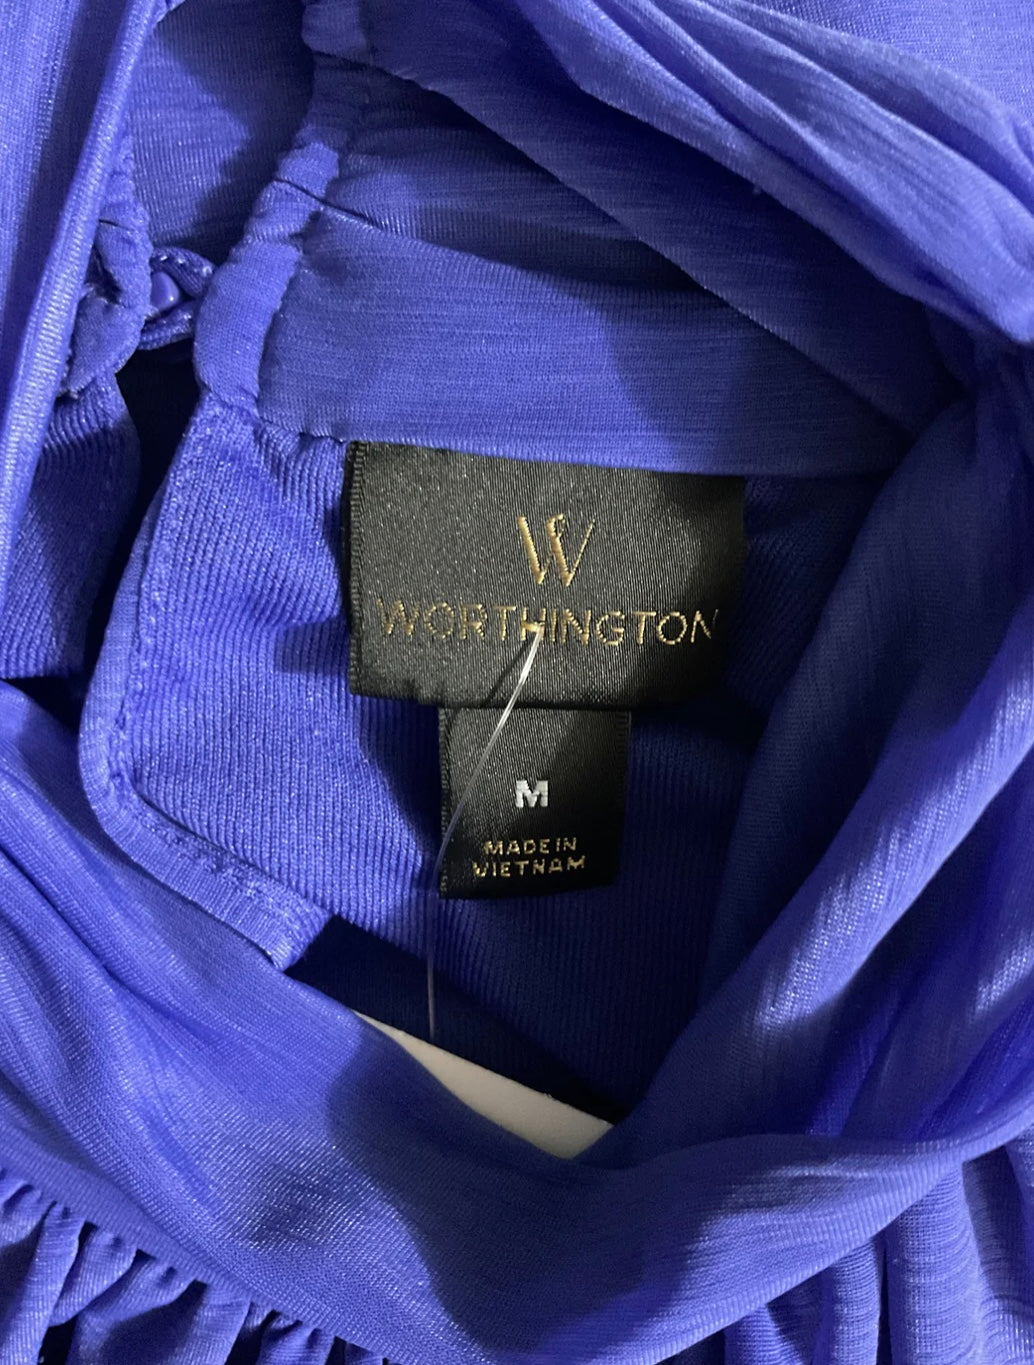 Worthington Sleevesless Royal Blue Blouse Size M